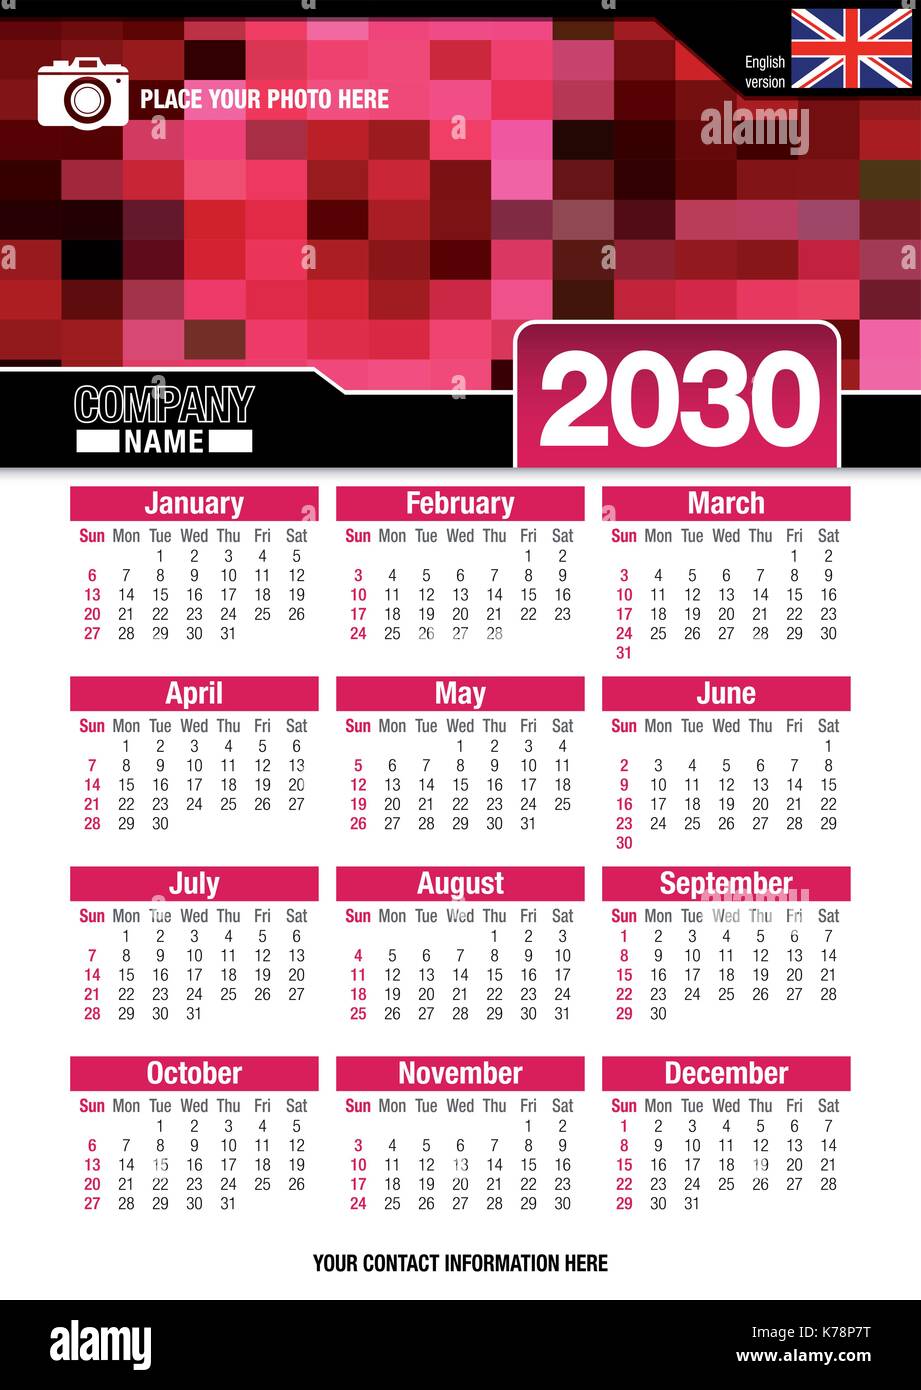 Utile calendario da parete 2030 con design di colori rosso mosaico. Formato A4 verticale. Dimensioni: 210mm x 297mm. Versione Inglese - immagine vettoriale Illustrazione Vettoriale